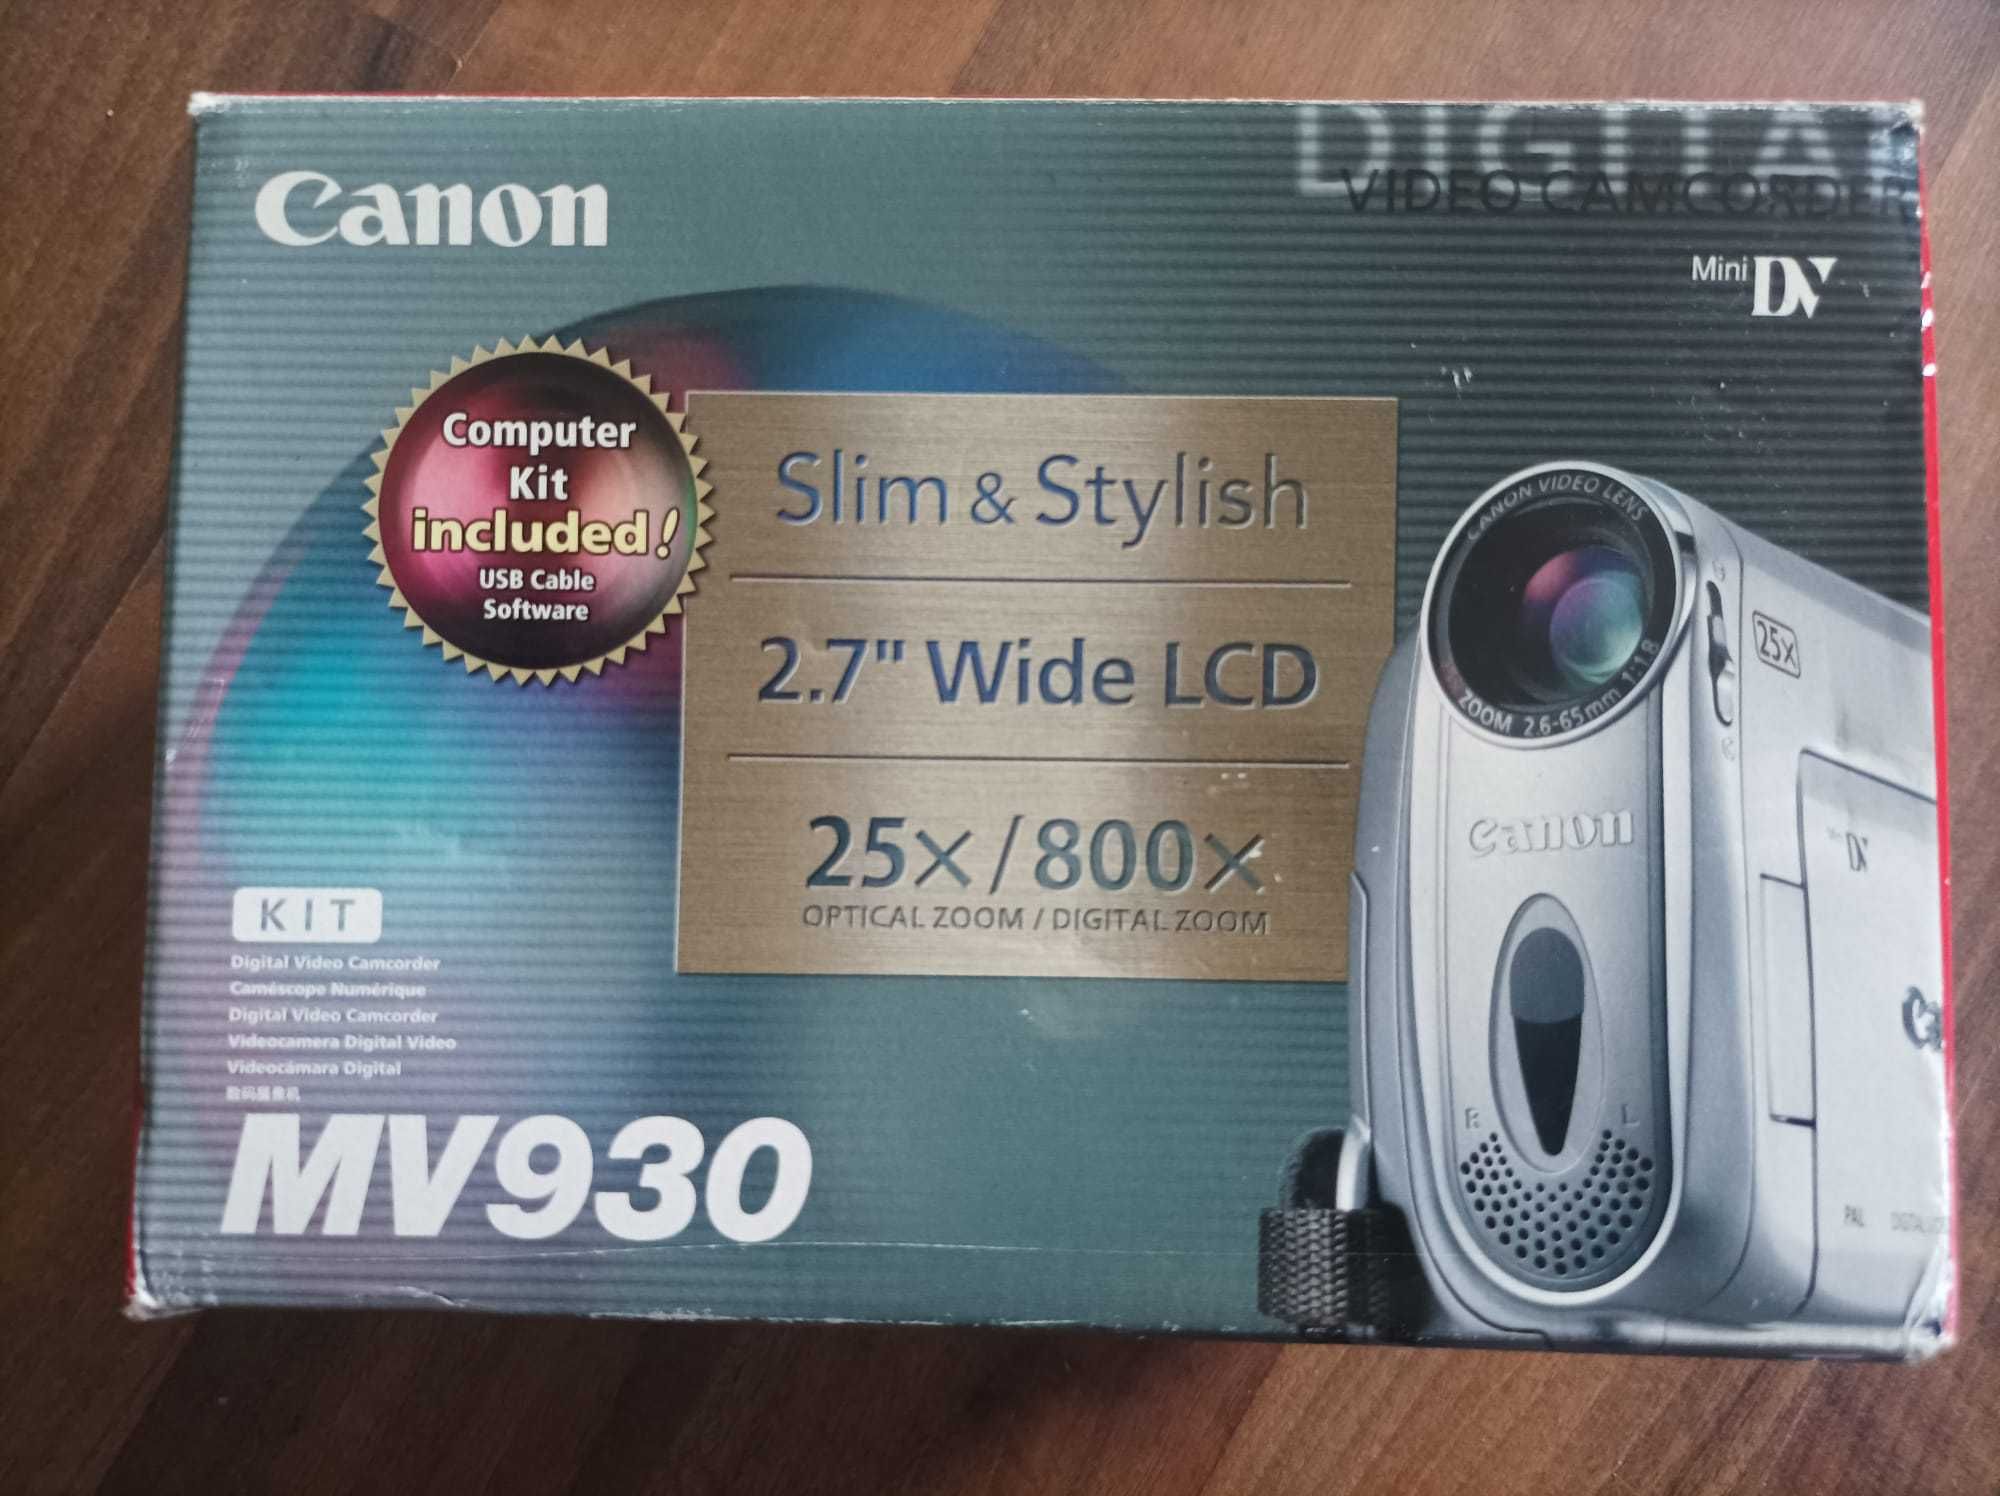 Camera video digitala Canon